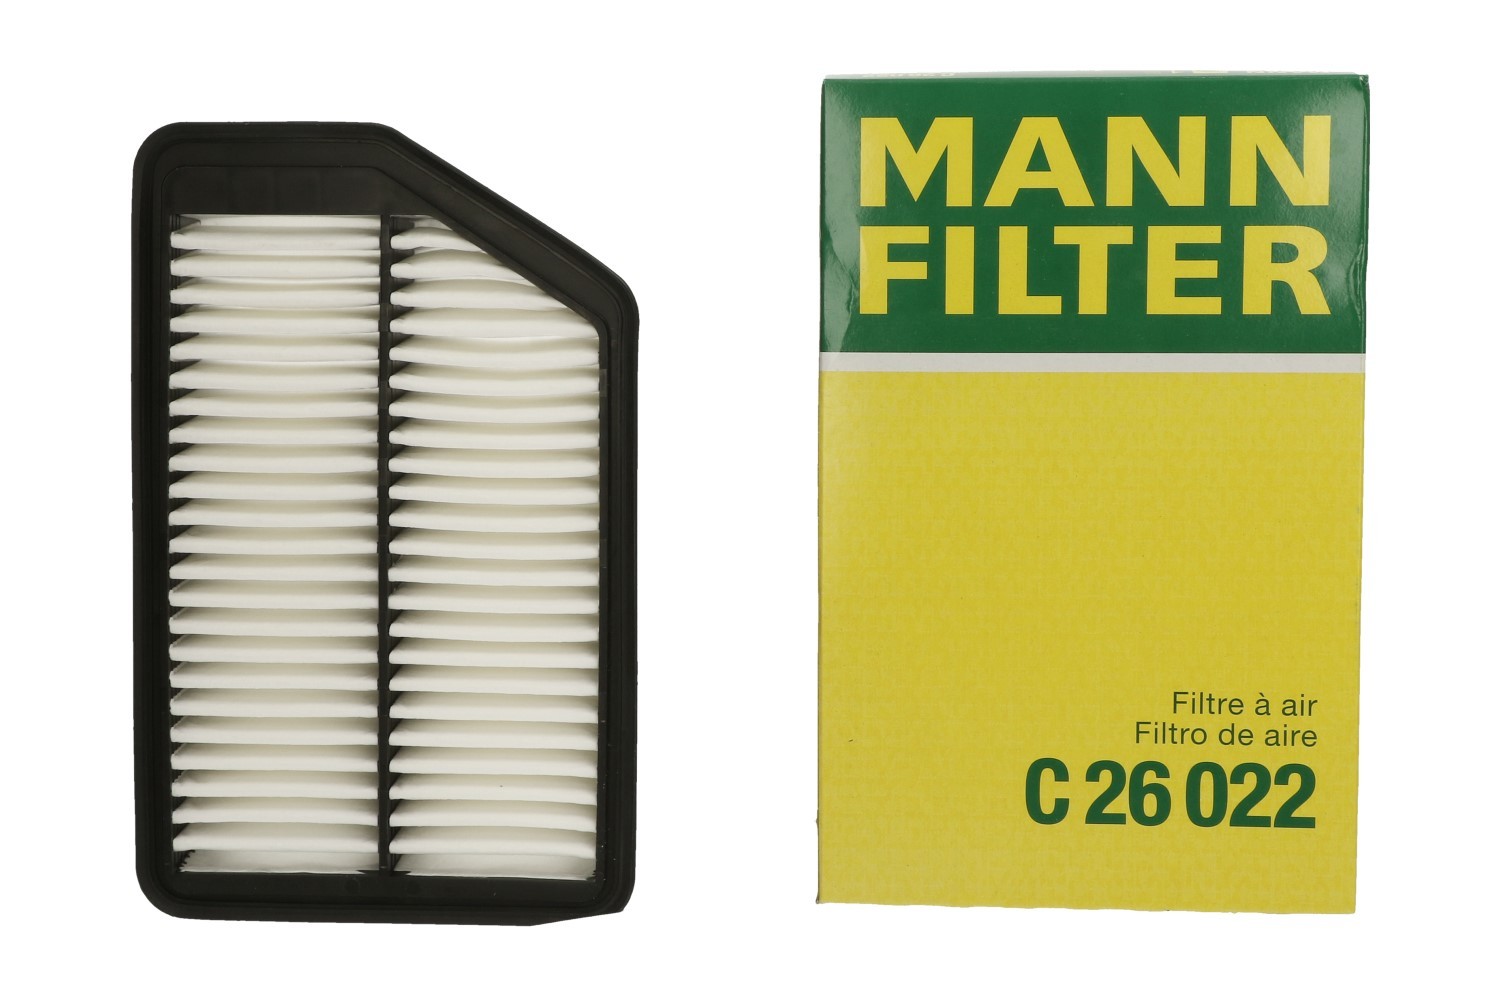 Фильтр воздушный ceed. Фильтр воздушный Mann c 26 022. Воздушный Mann-Filter c26022. Воздушный фильтр Киа СИД 1. Воздушный фильтр Киа СИД 2016.